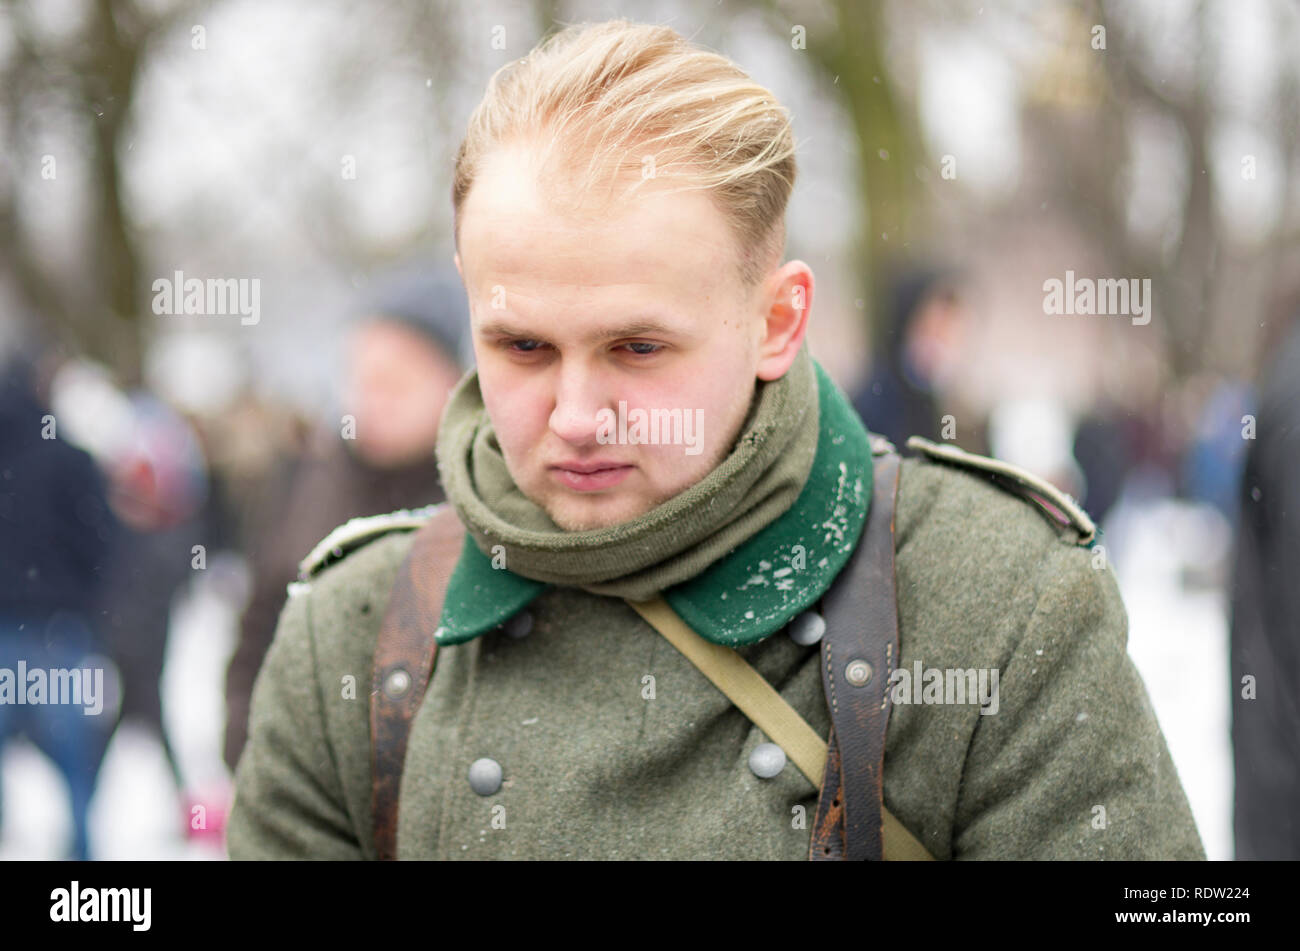 Saint Petersburg, Russie - Février 23, 2017 : soldat allemand de la Wehrmacht sans chapeau, avec tête tombante. Reconstitution historique de la Première Guerre mondiale Banque D'Images